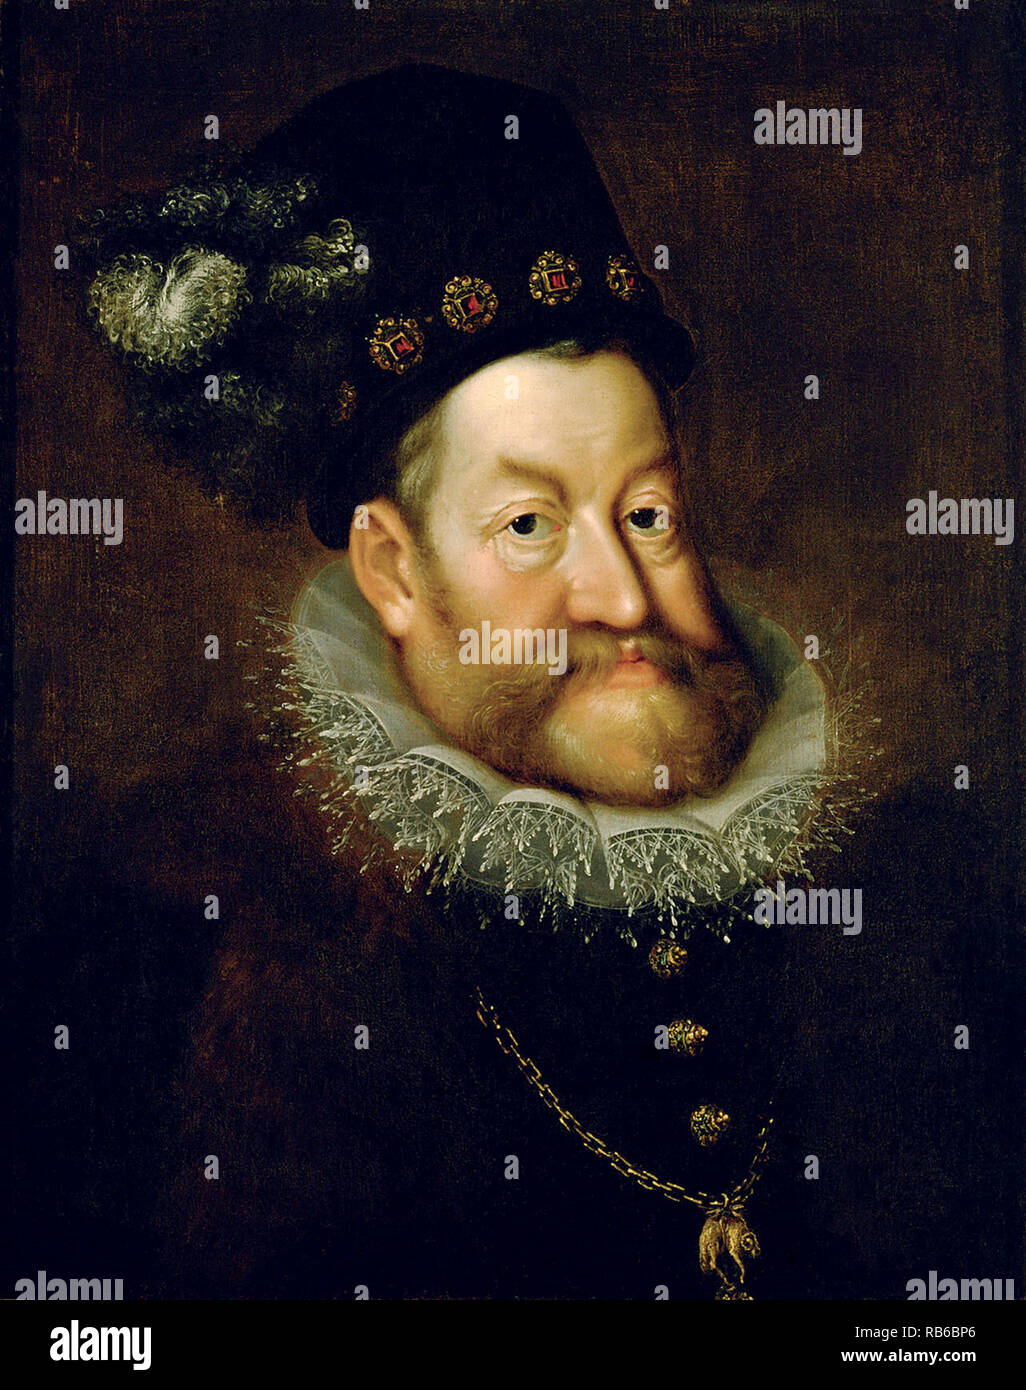 Rudolf II (1552-1612) Kaiser des Heiligen Römischen Reiches, König von Ungarn und Kroatien (wie Rudolf I, 1572-1608), König von Böhmen (1575-1608/1611) und Erzherzog von Österreich (1576-1608). Er war ein Mitglied des Hauses Habsburg. Stockfoto